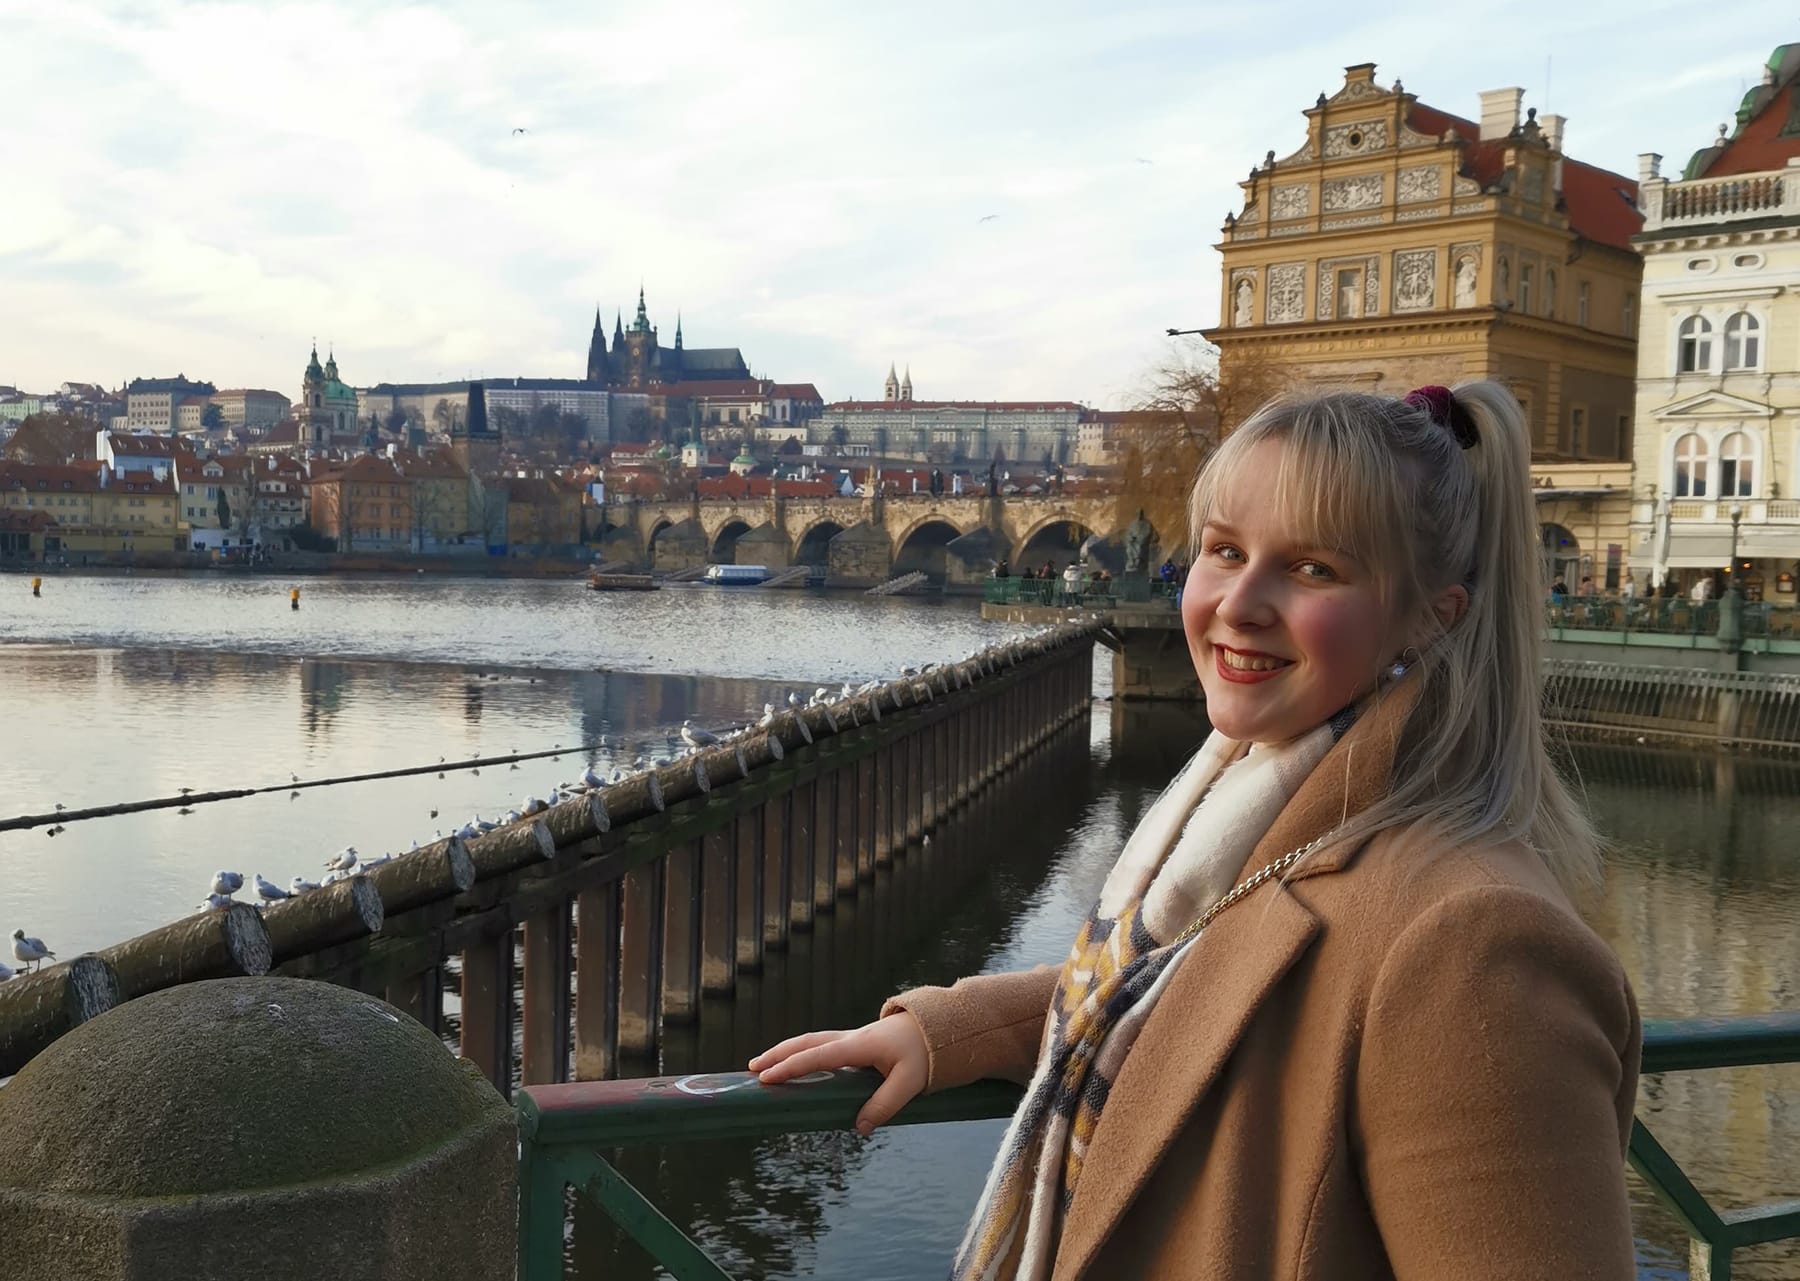 Susanna Aaltonen matkalla Vltavajoen kupeessa, jonka takana näkyy Prahan linnoitus.